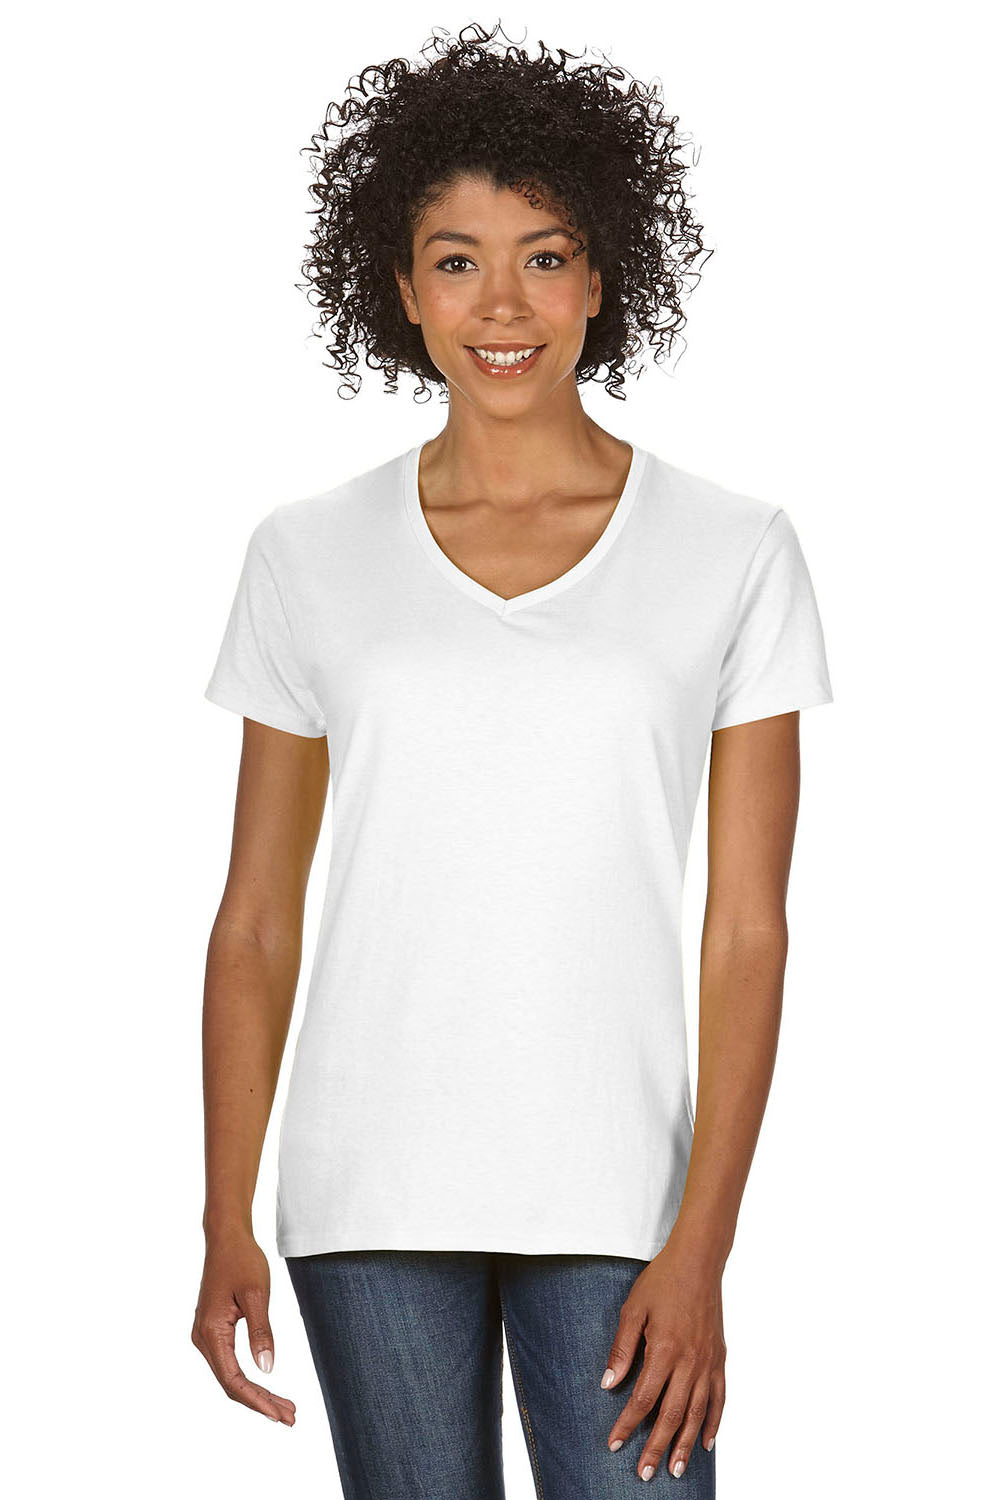 Gildan G500VL Womens Short Sleeve V-Neck T-Shirt White Front